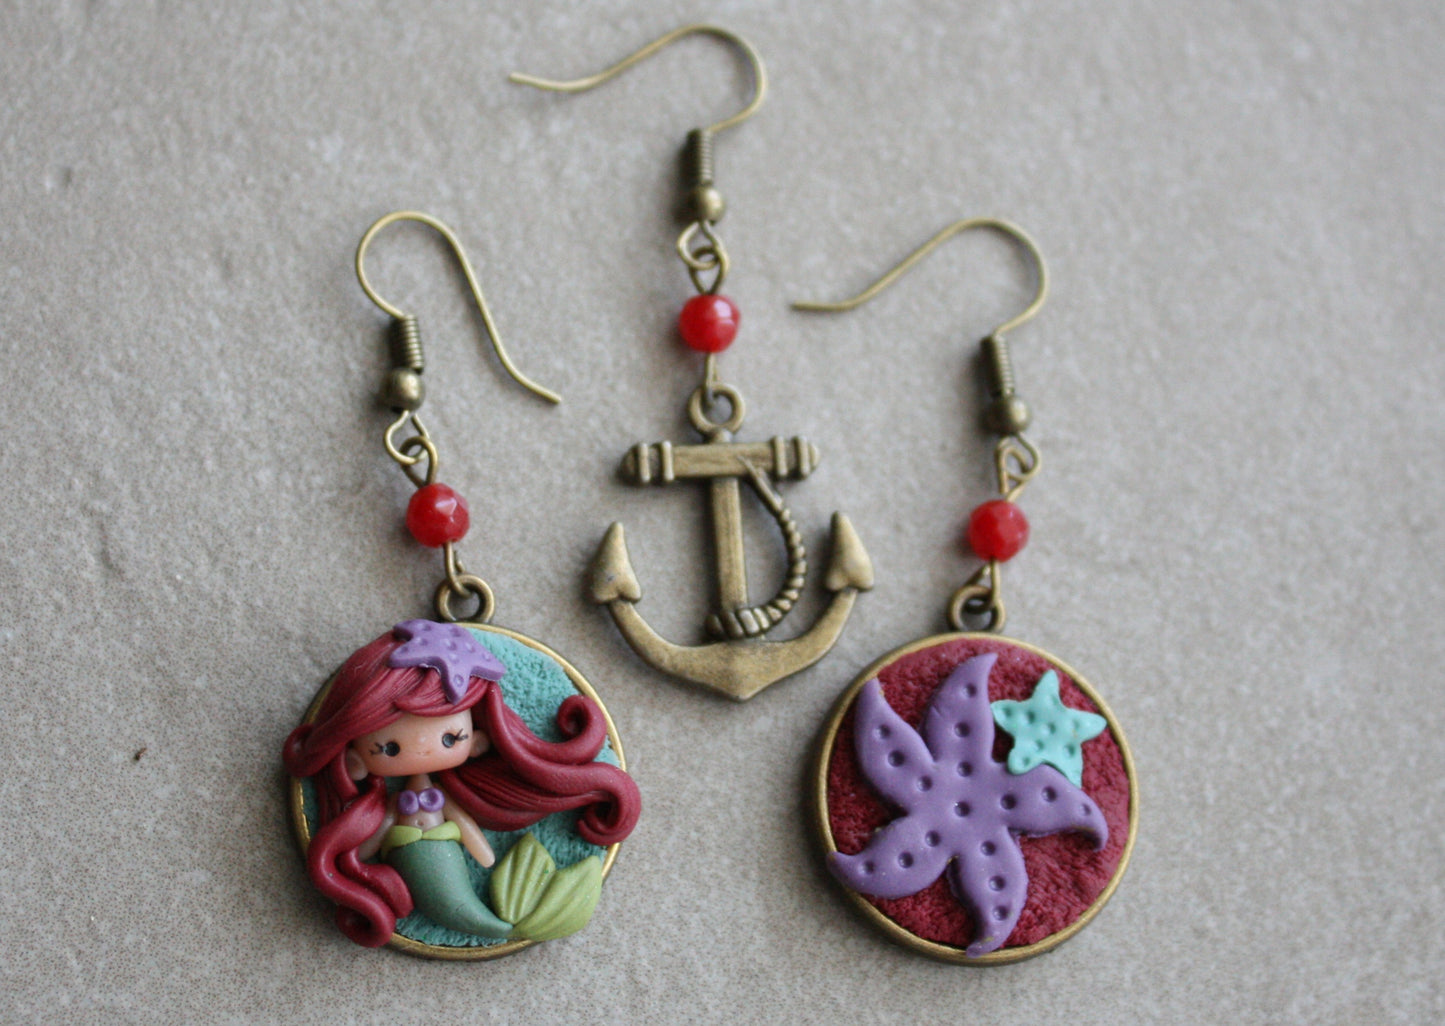 Ariel pendant earrings